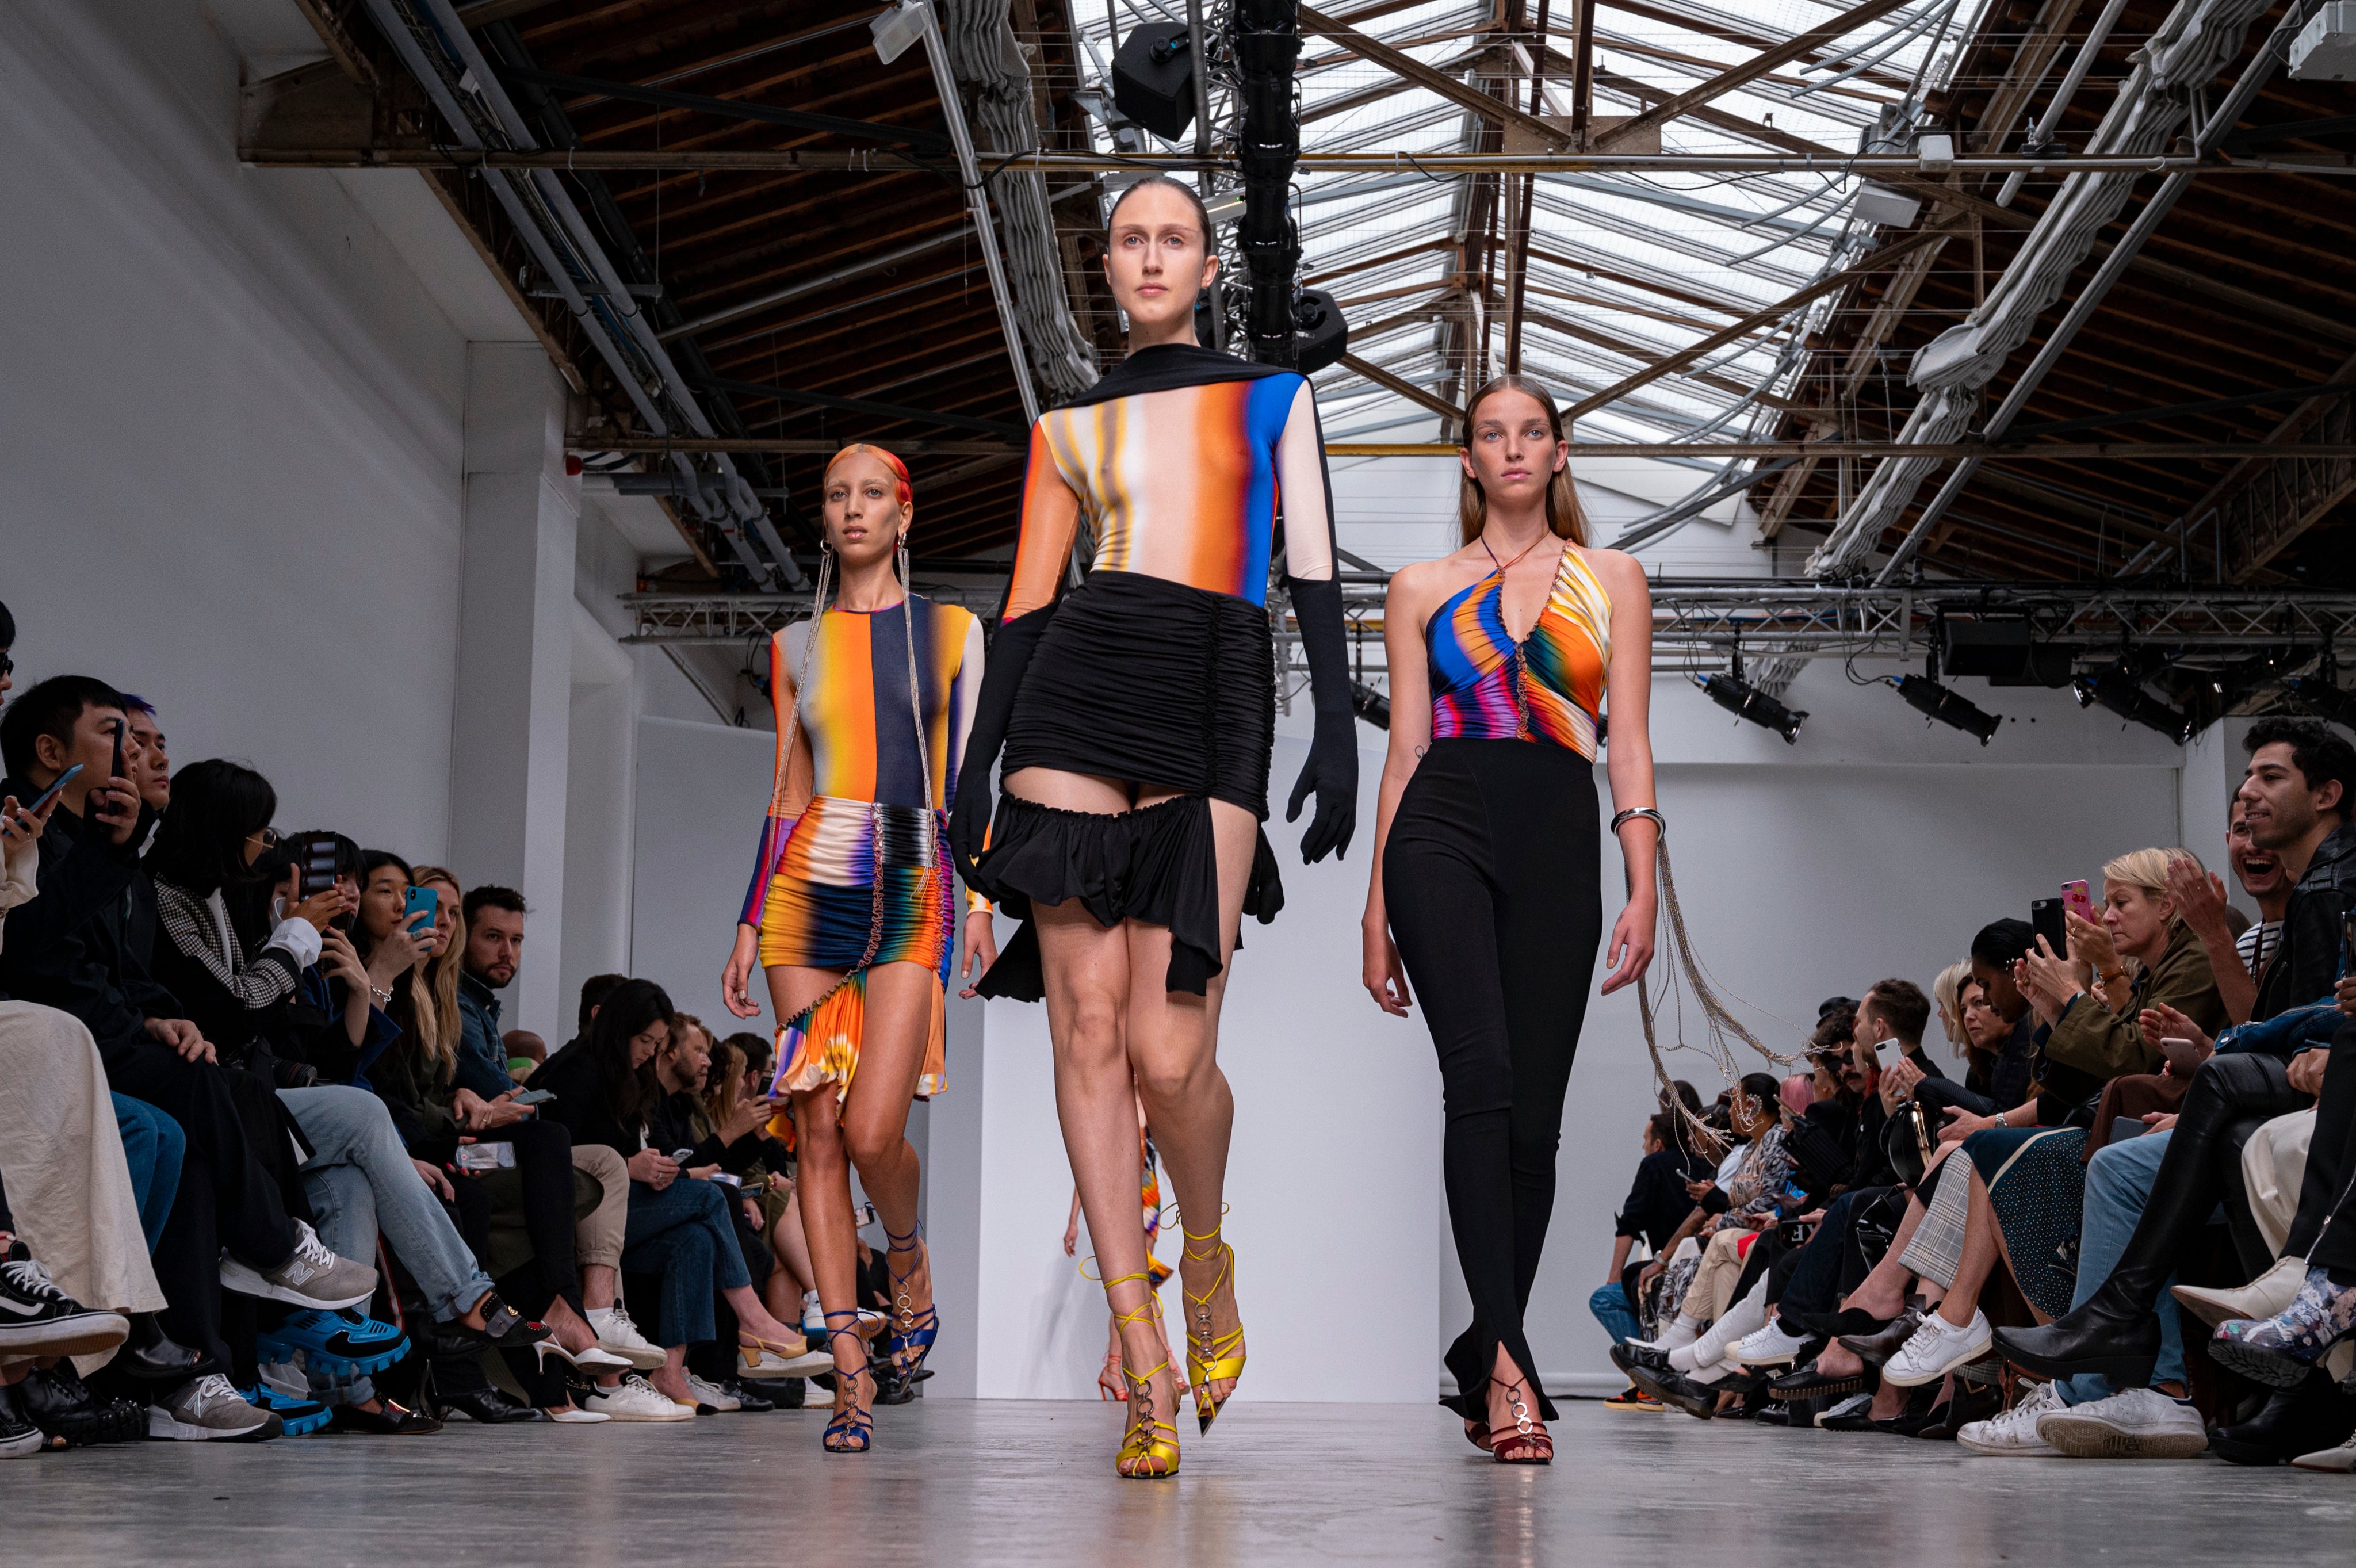 Mugler : Runway - Paris Fashion Week - Womenswear Spring Summer 2020